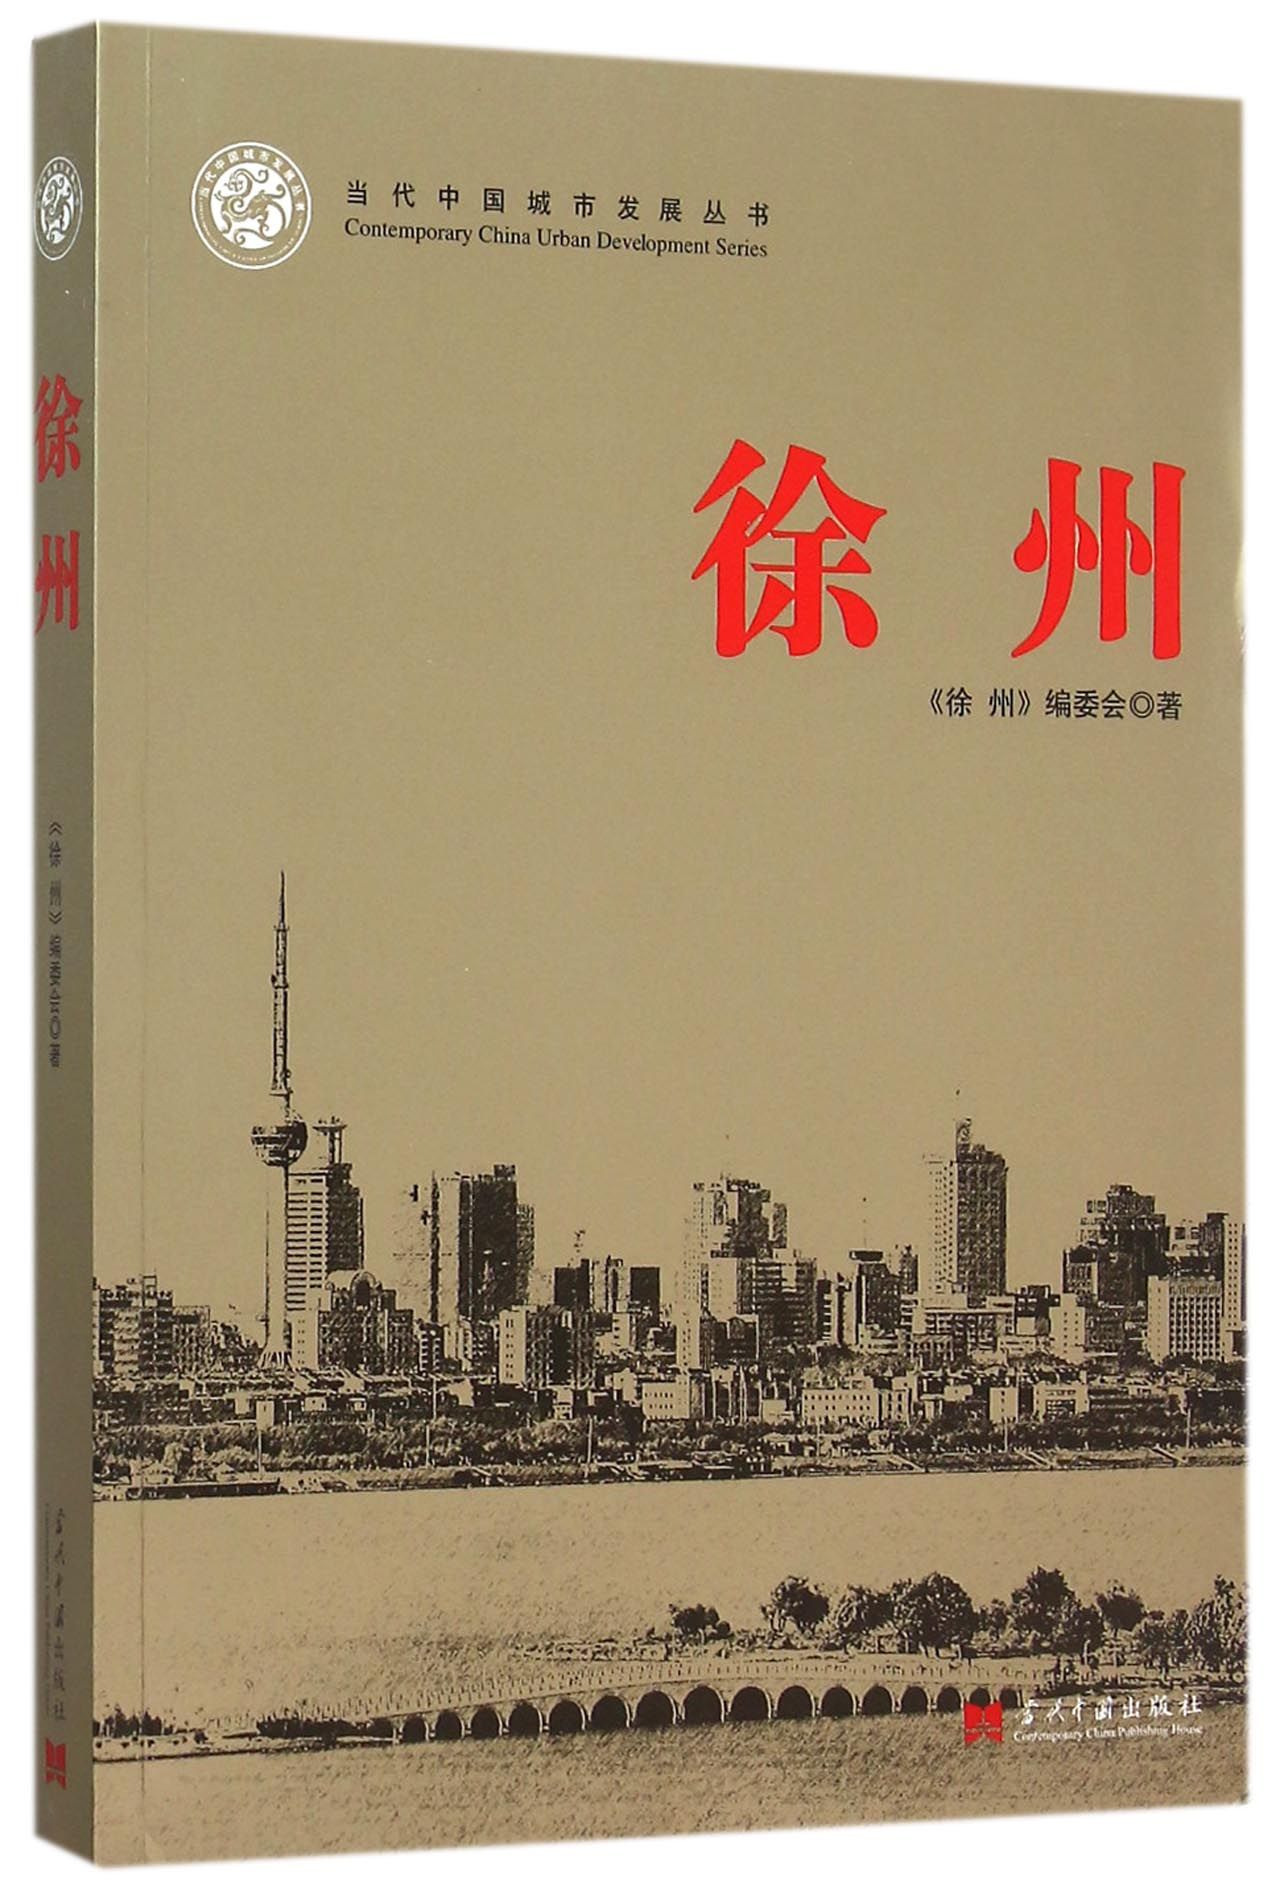 徐州/当代中国城市发展丛书 mobi格式下载